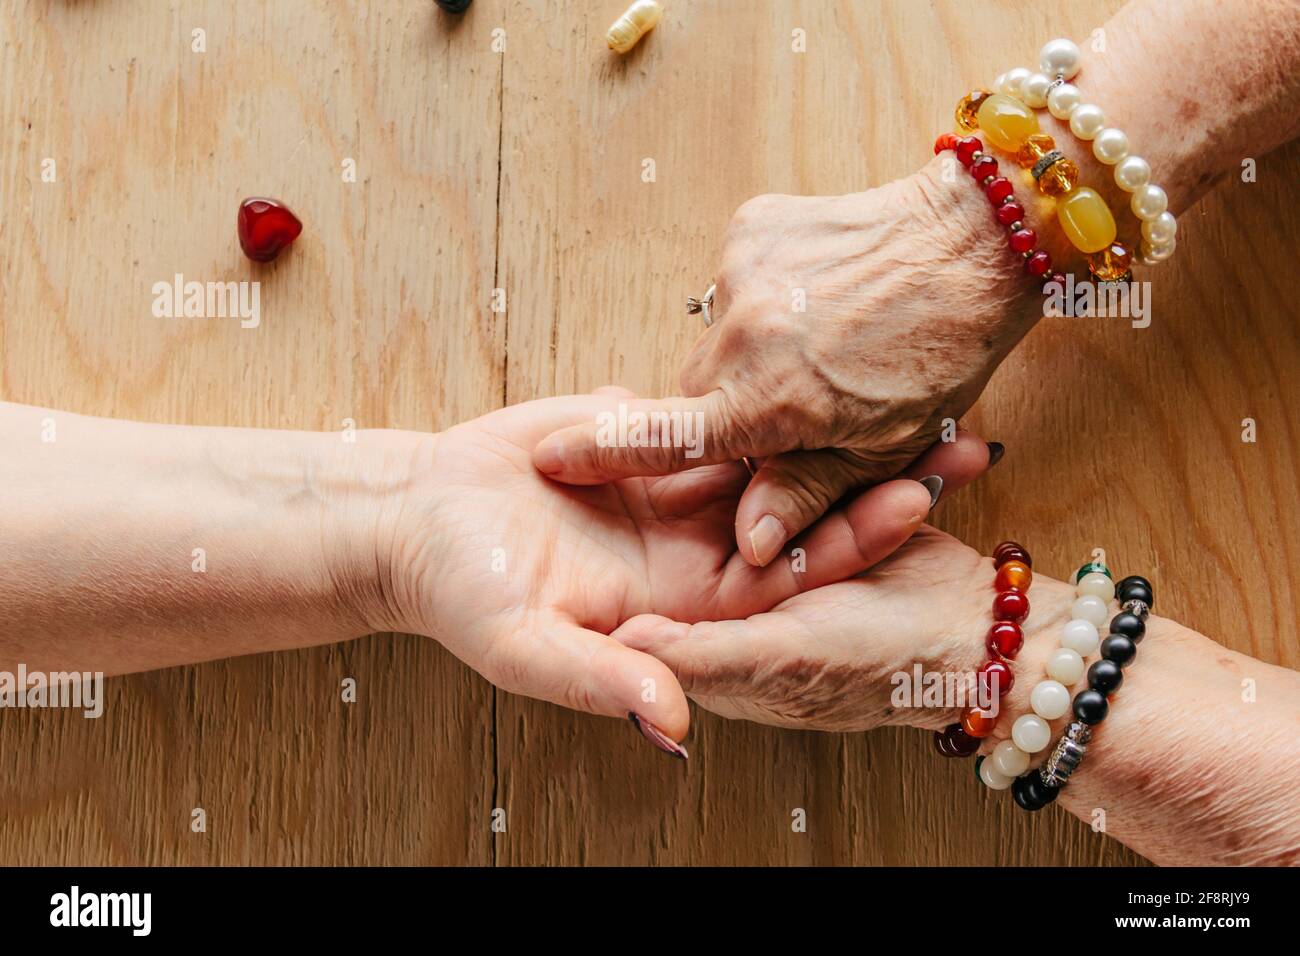 Grand-mère magie, récit de fortune, palmarès. Chiromancy, les mains des femmes, la lecture du destin Banque D'Images